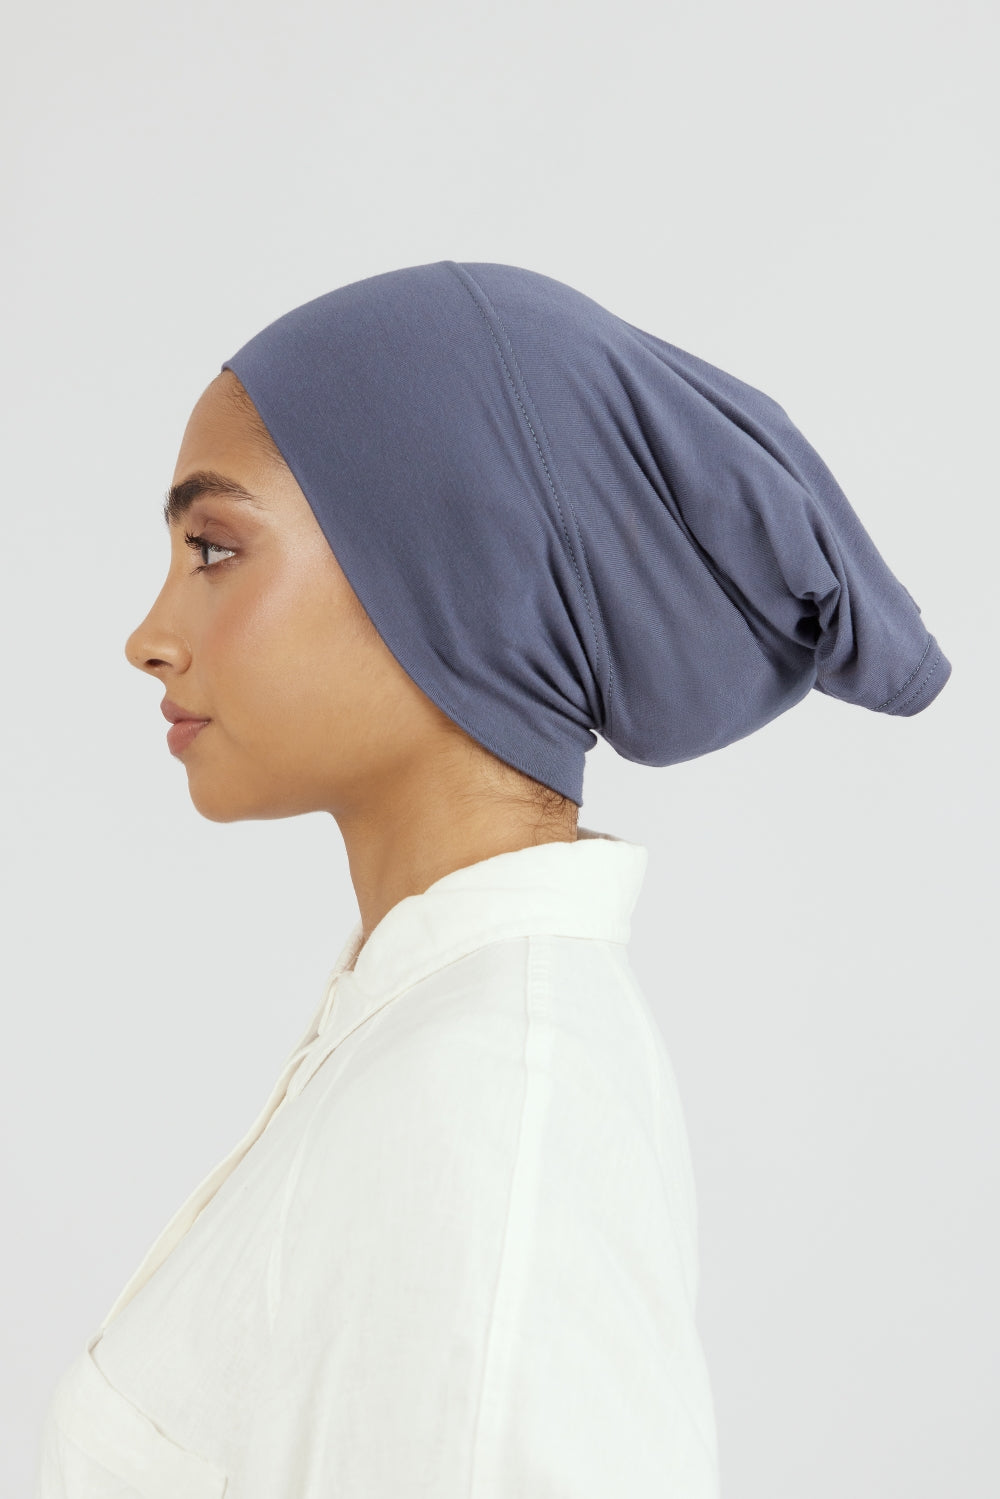 CA - Matching Chiffon Hijab Set - Denim